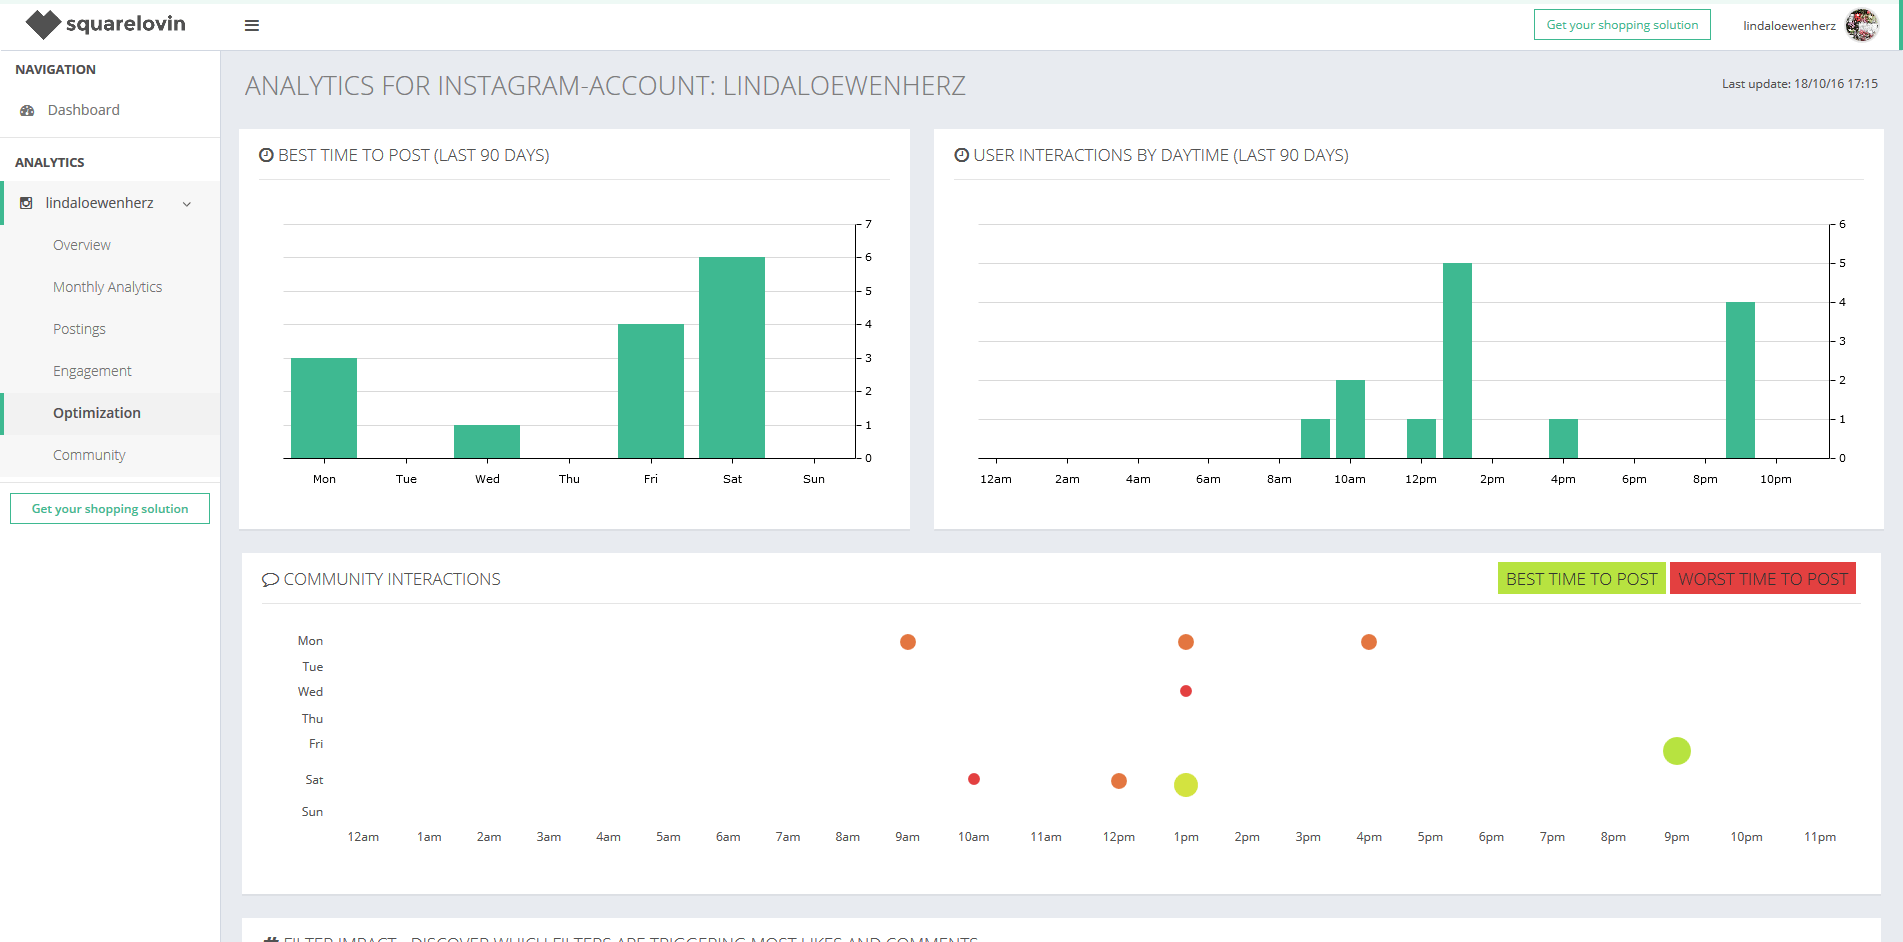 Vista general de los resultados del análisis en Squarelovin